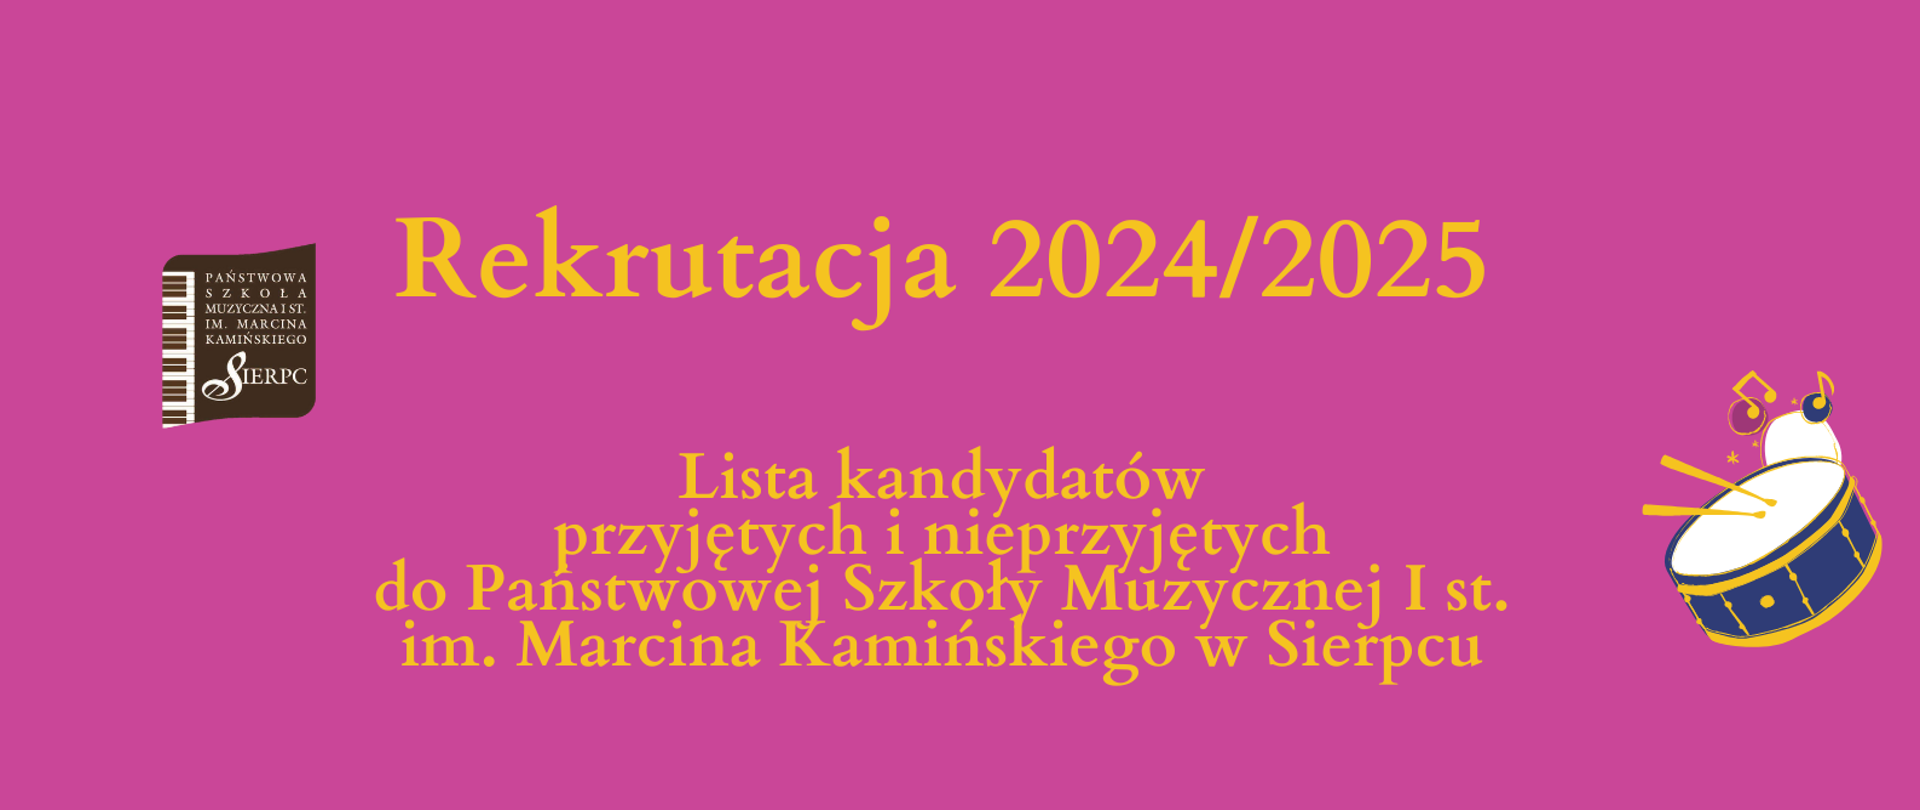 Na różowym tle pośrodku tekst: Rekrutacja 2024/2025, lista kandydatów przyjętych i nieprzyjętych do PSM I st. w Sierpcu. Z lewej strony logo szkoły.